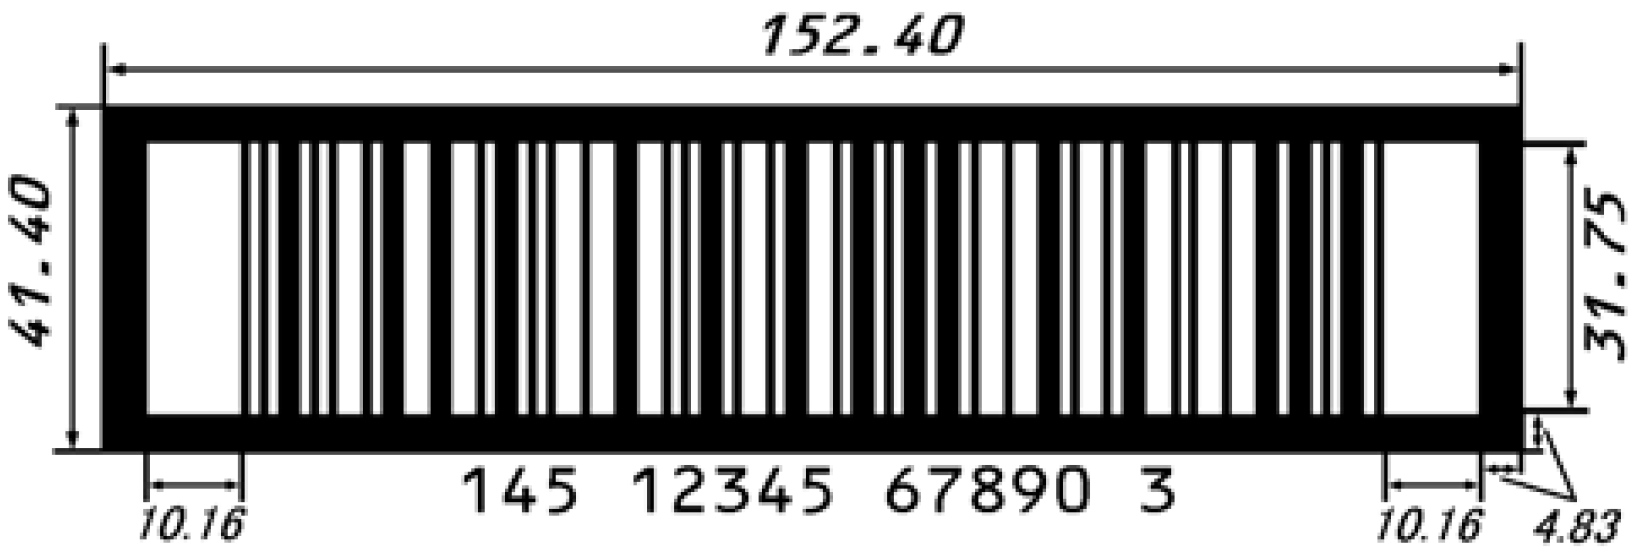 ITF印刷のサイズ